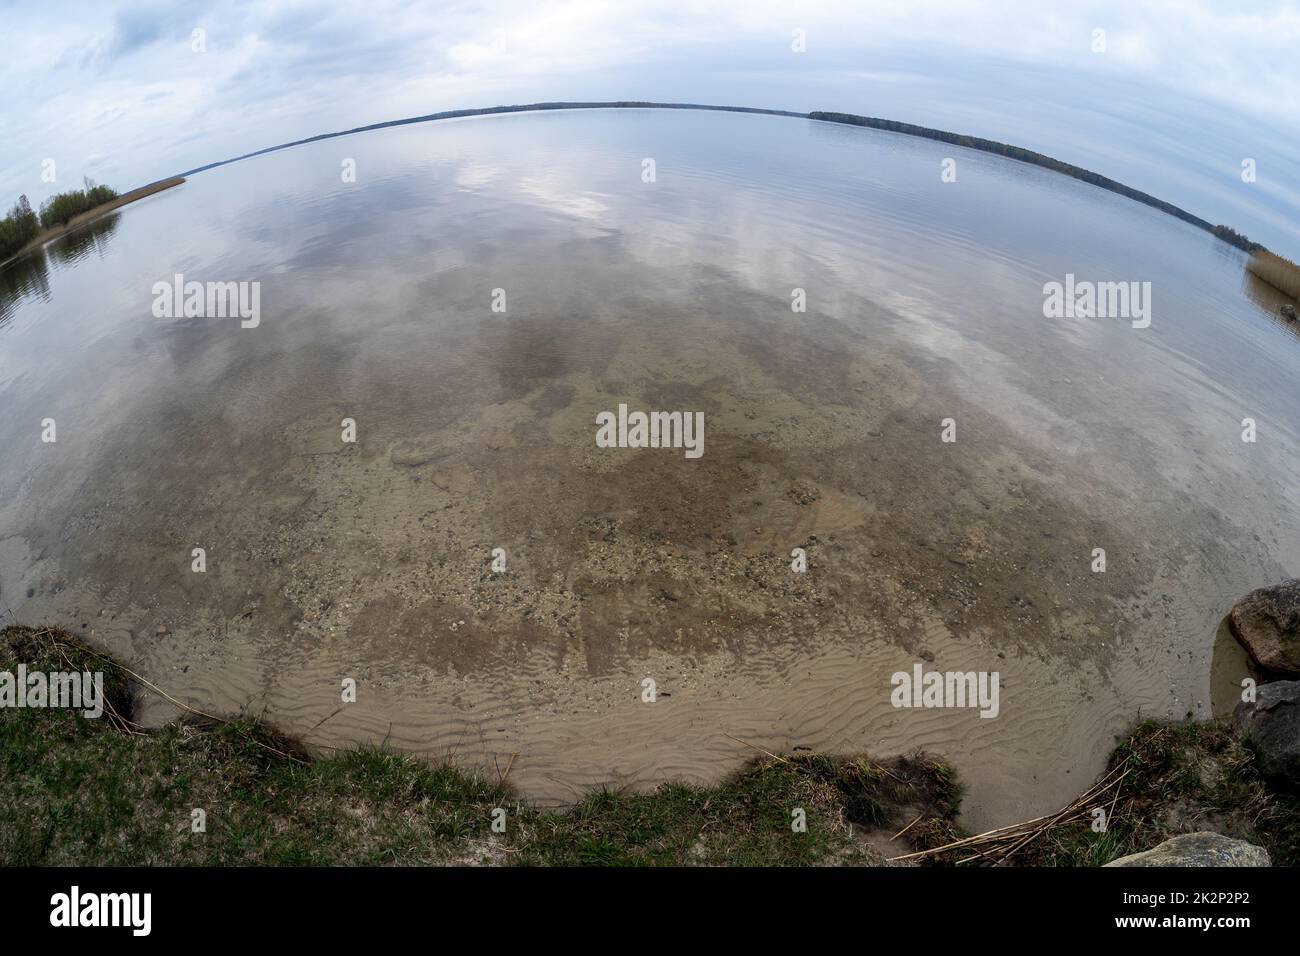 Die ruhige Wasseroberfläche bei bewölktem Wetter. Fischaugenobjektiv. Stockfoto